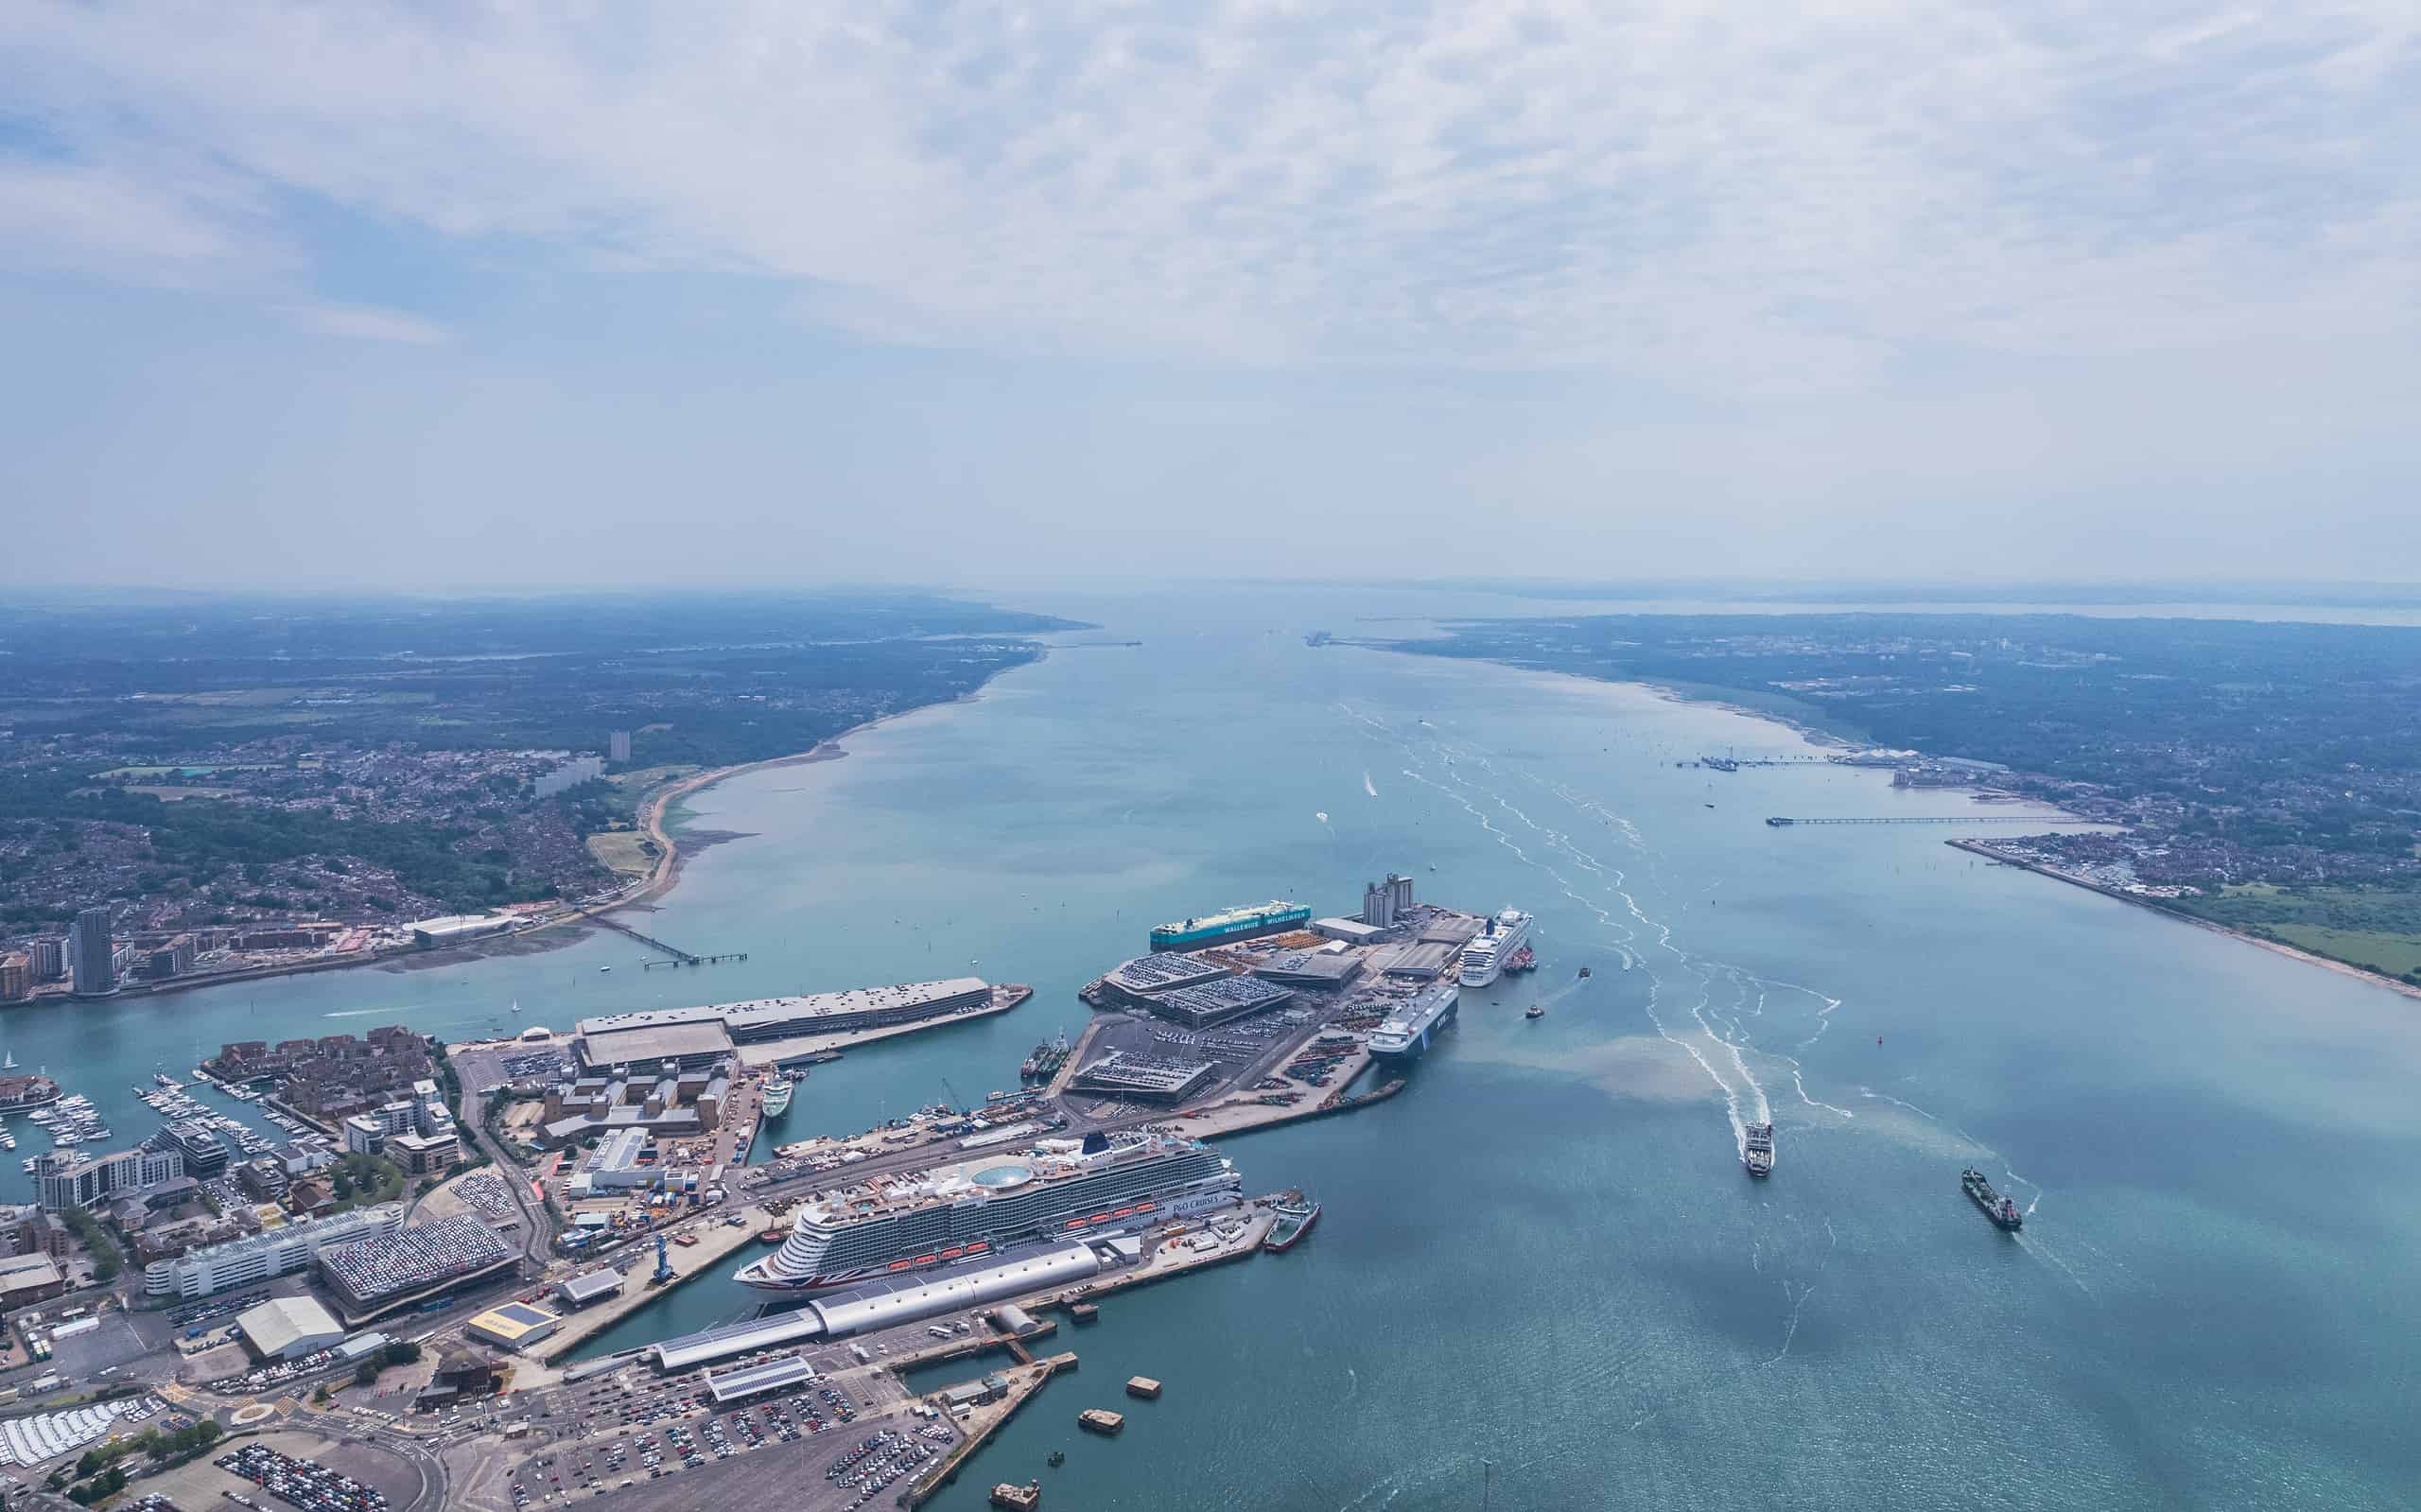 L'epica veduta aerea del porto, del molo e del cantiere navale di Southampton